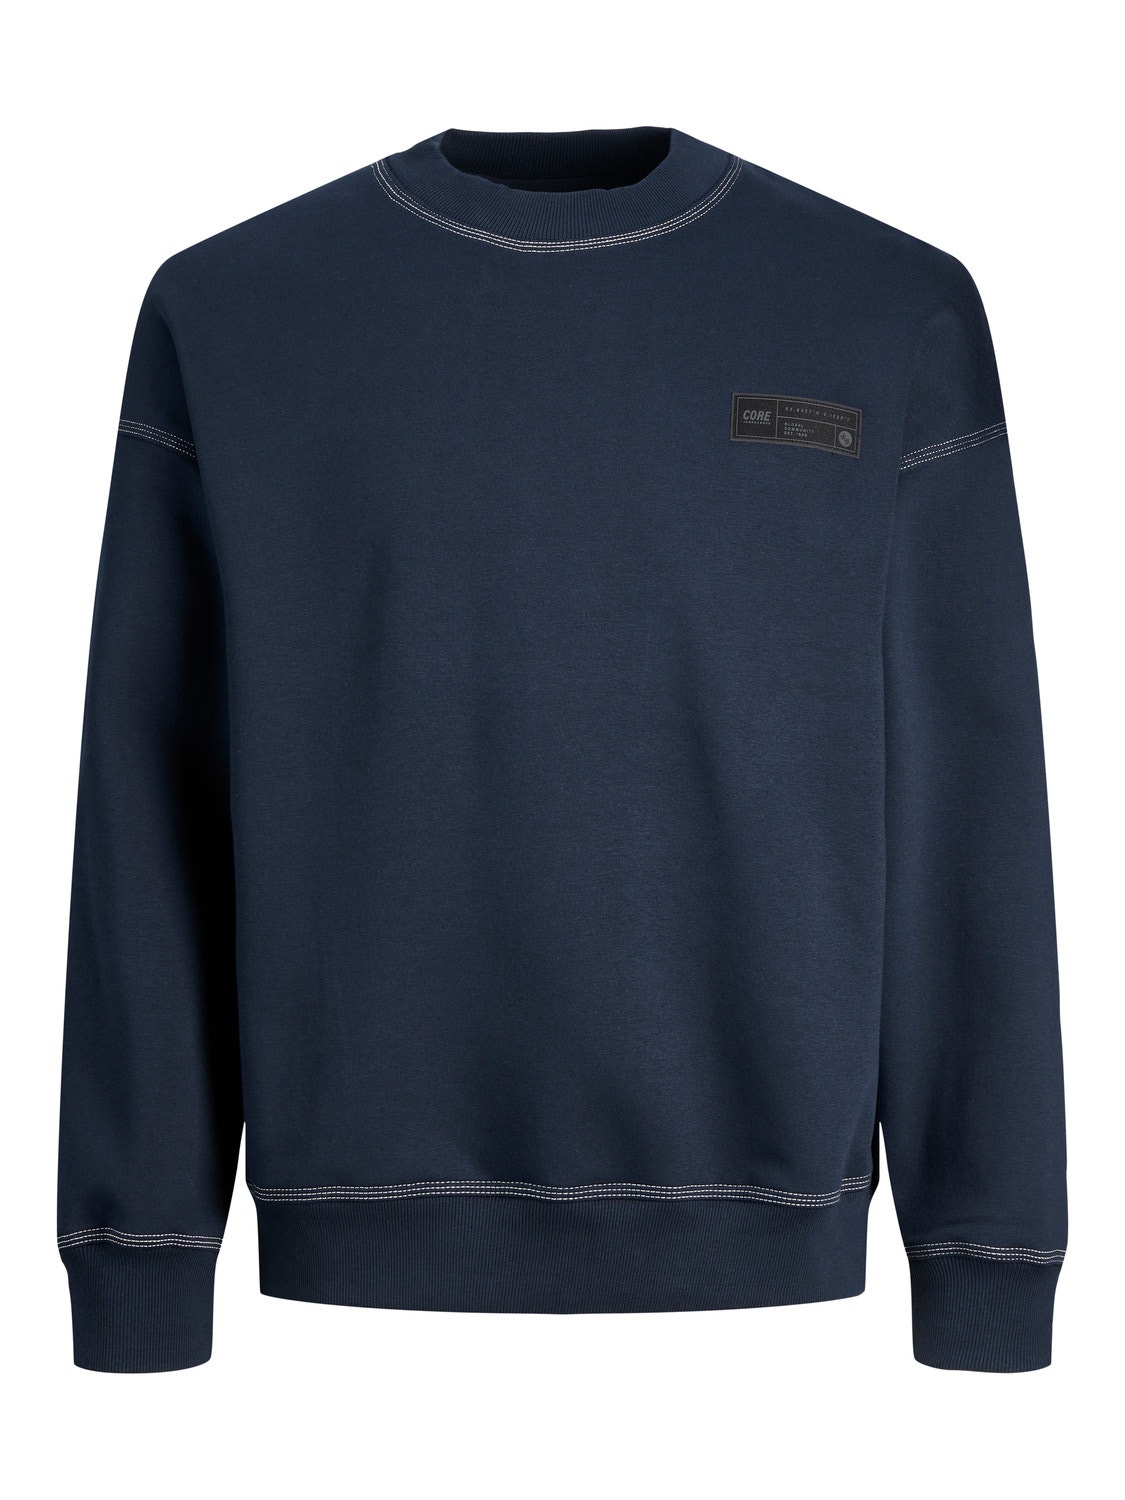 Jack & Jones Plain Crew neck Sweatshirt -Navy Blazer - 12247032